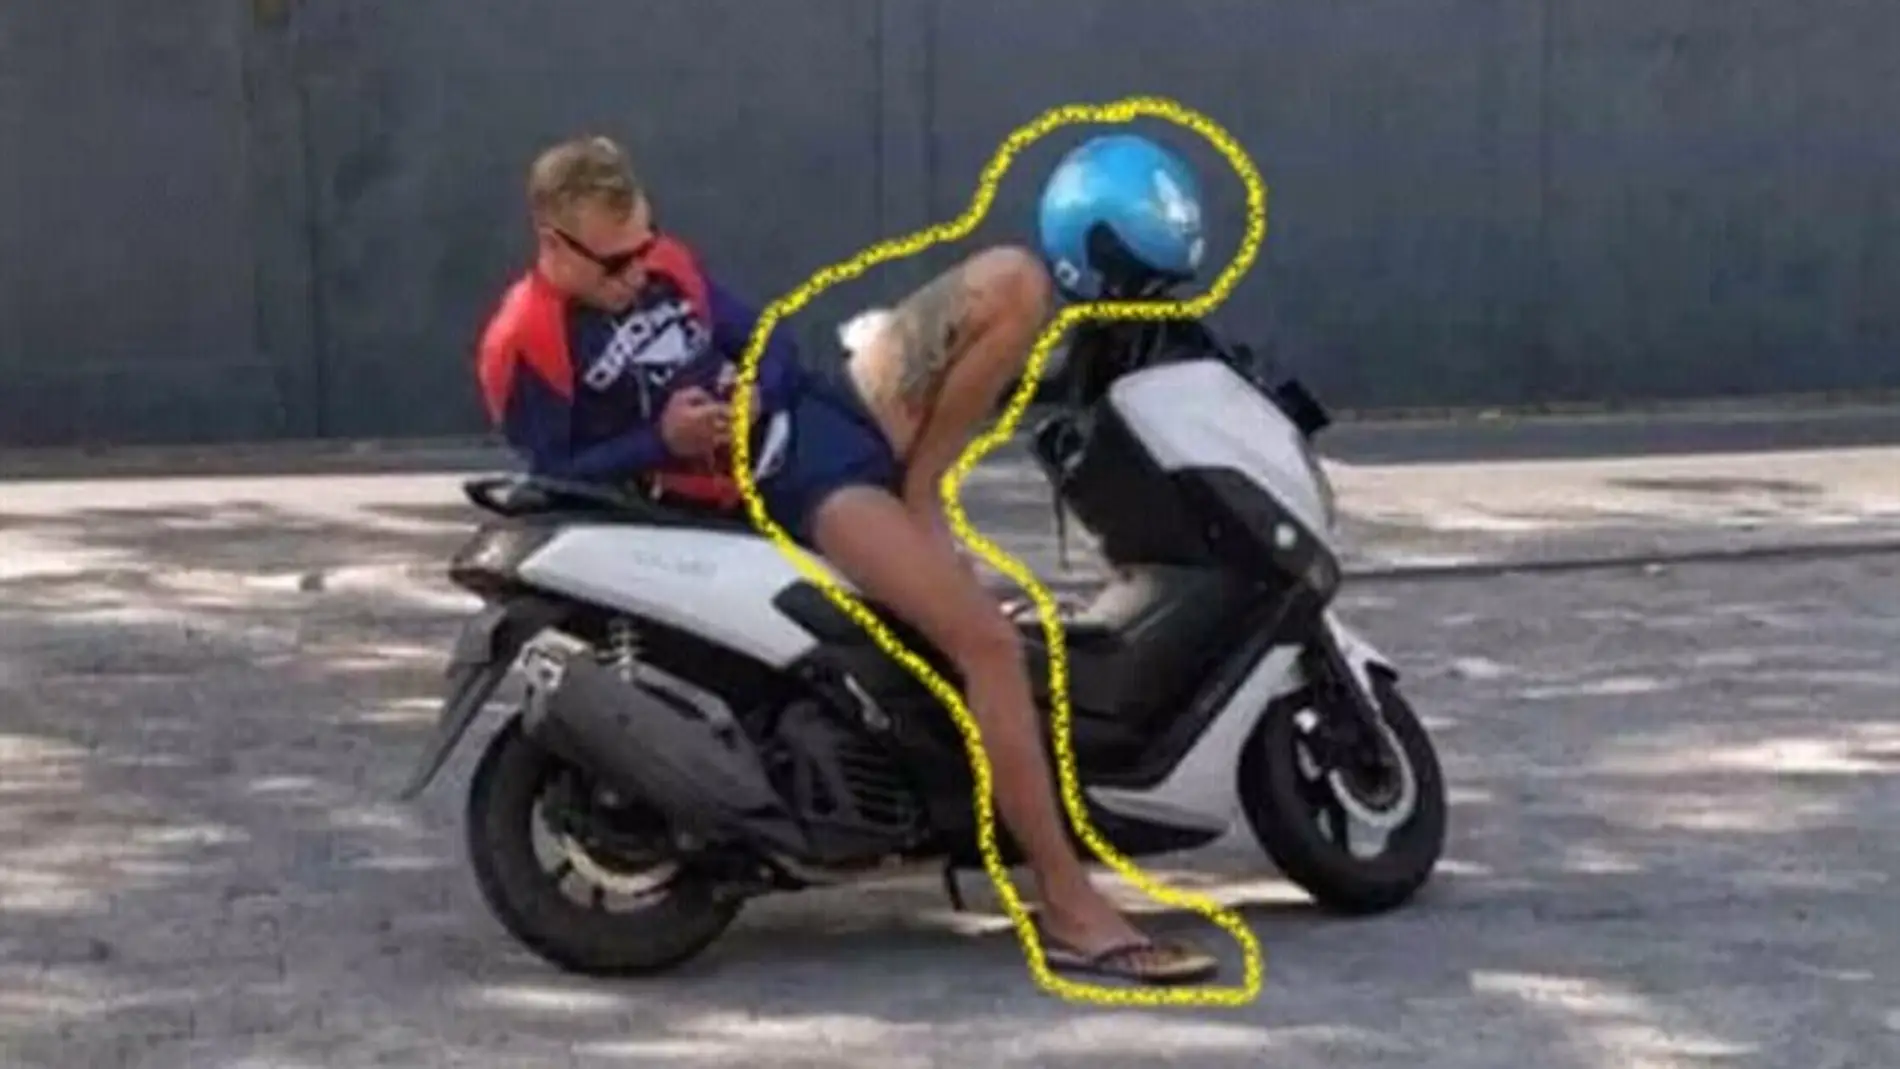 Chica en una moto